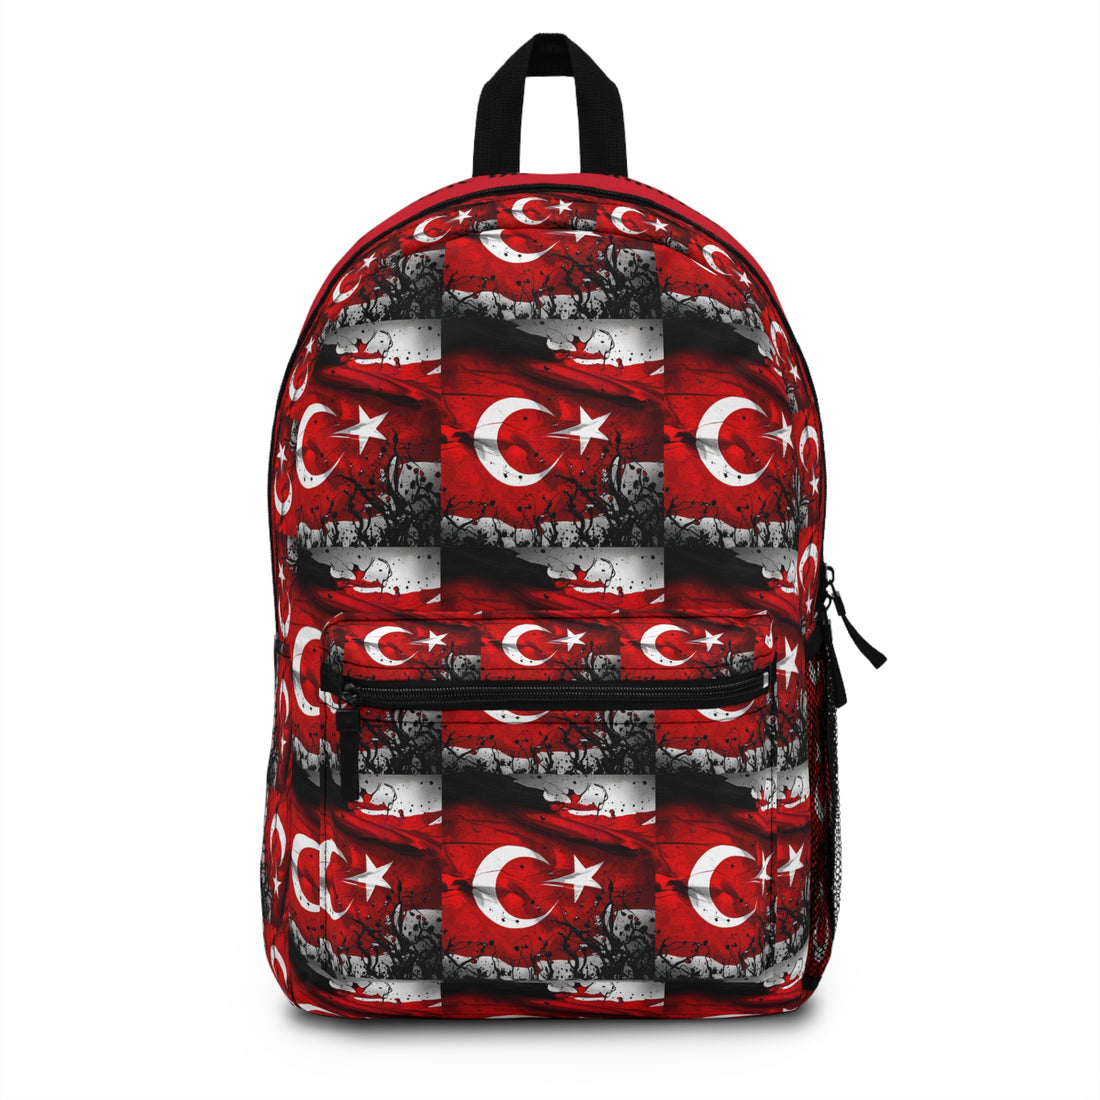 Backpack Türkei - Onurumuzla serefimizle namusumuzla yasariz ve ölürüz